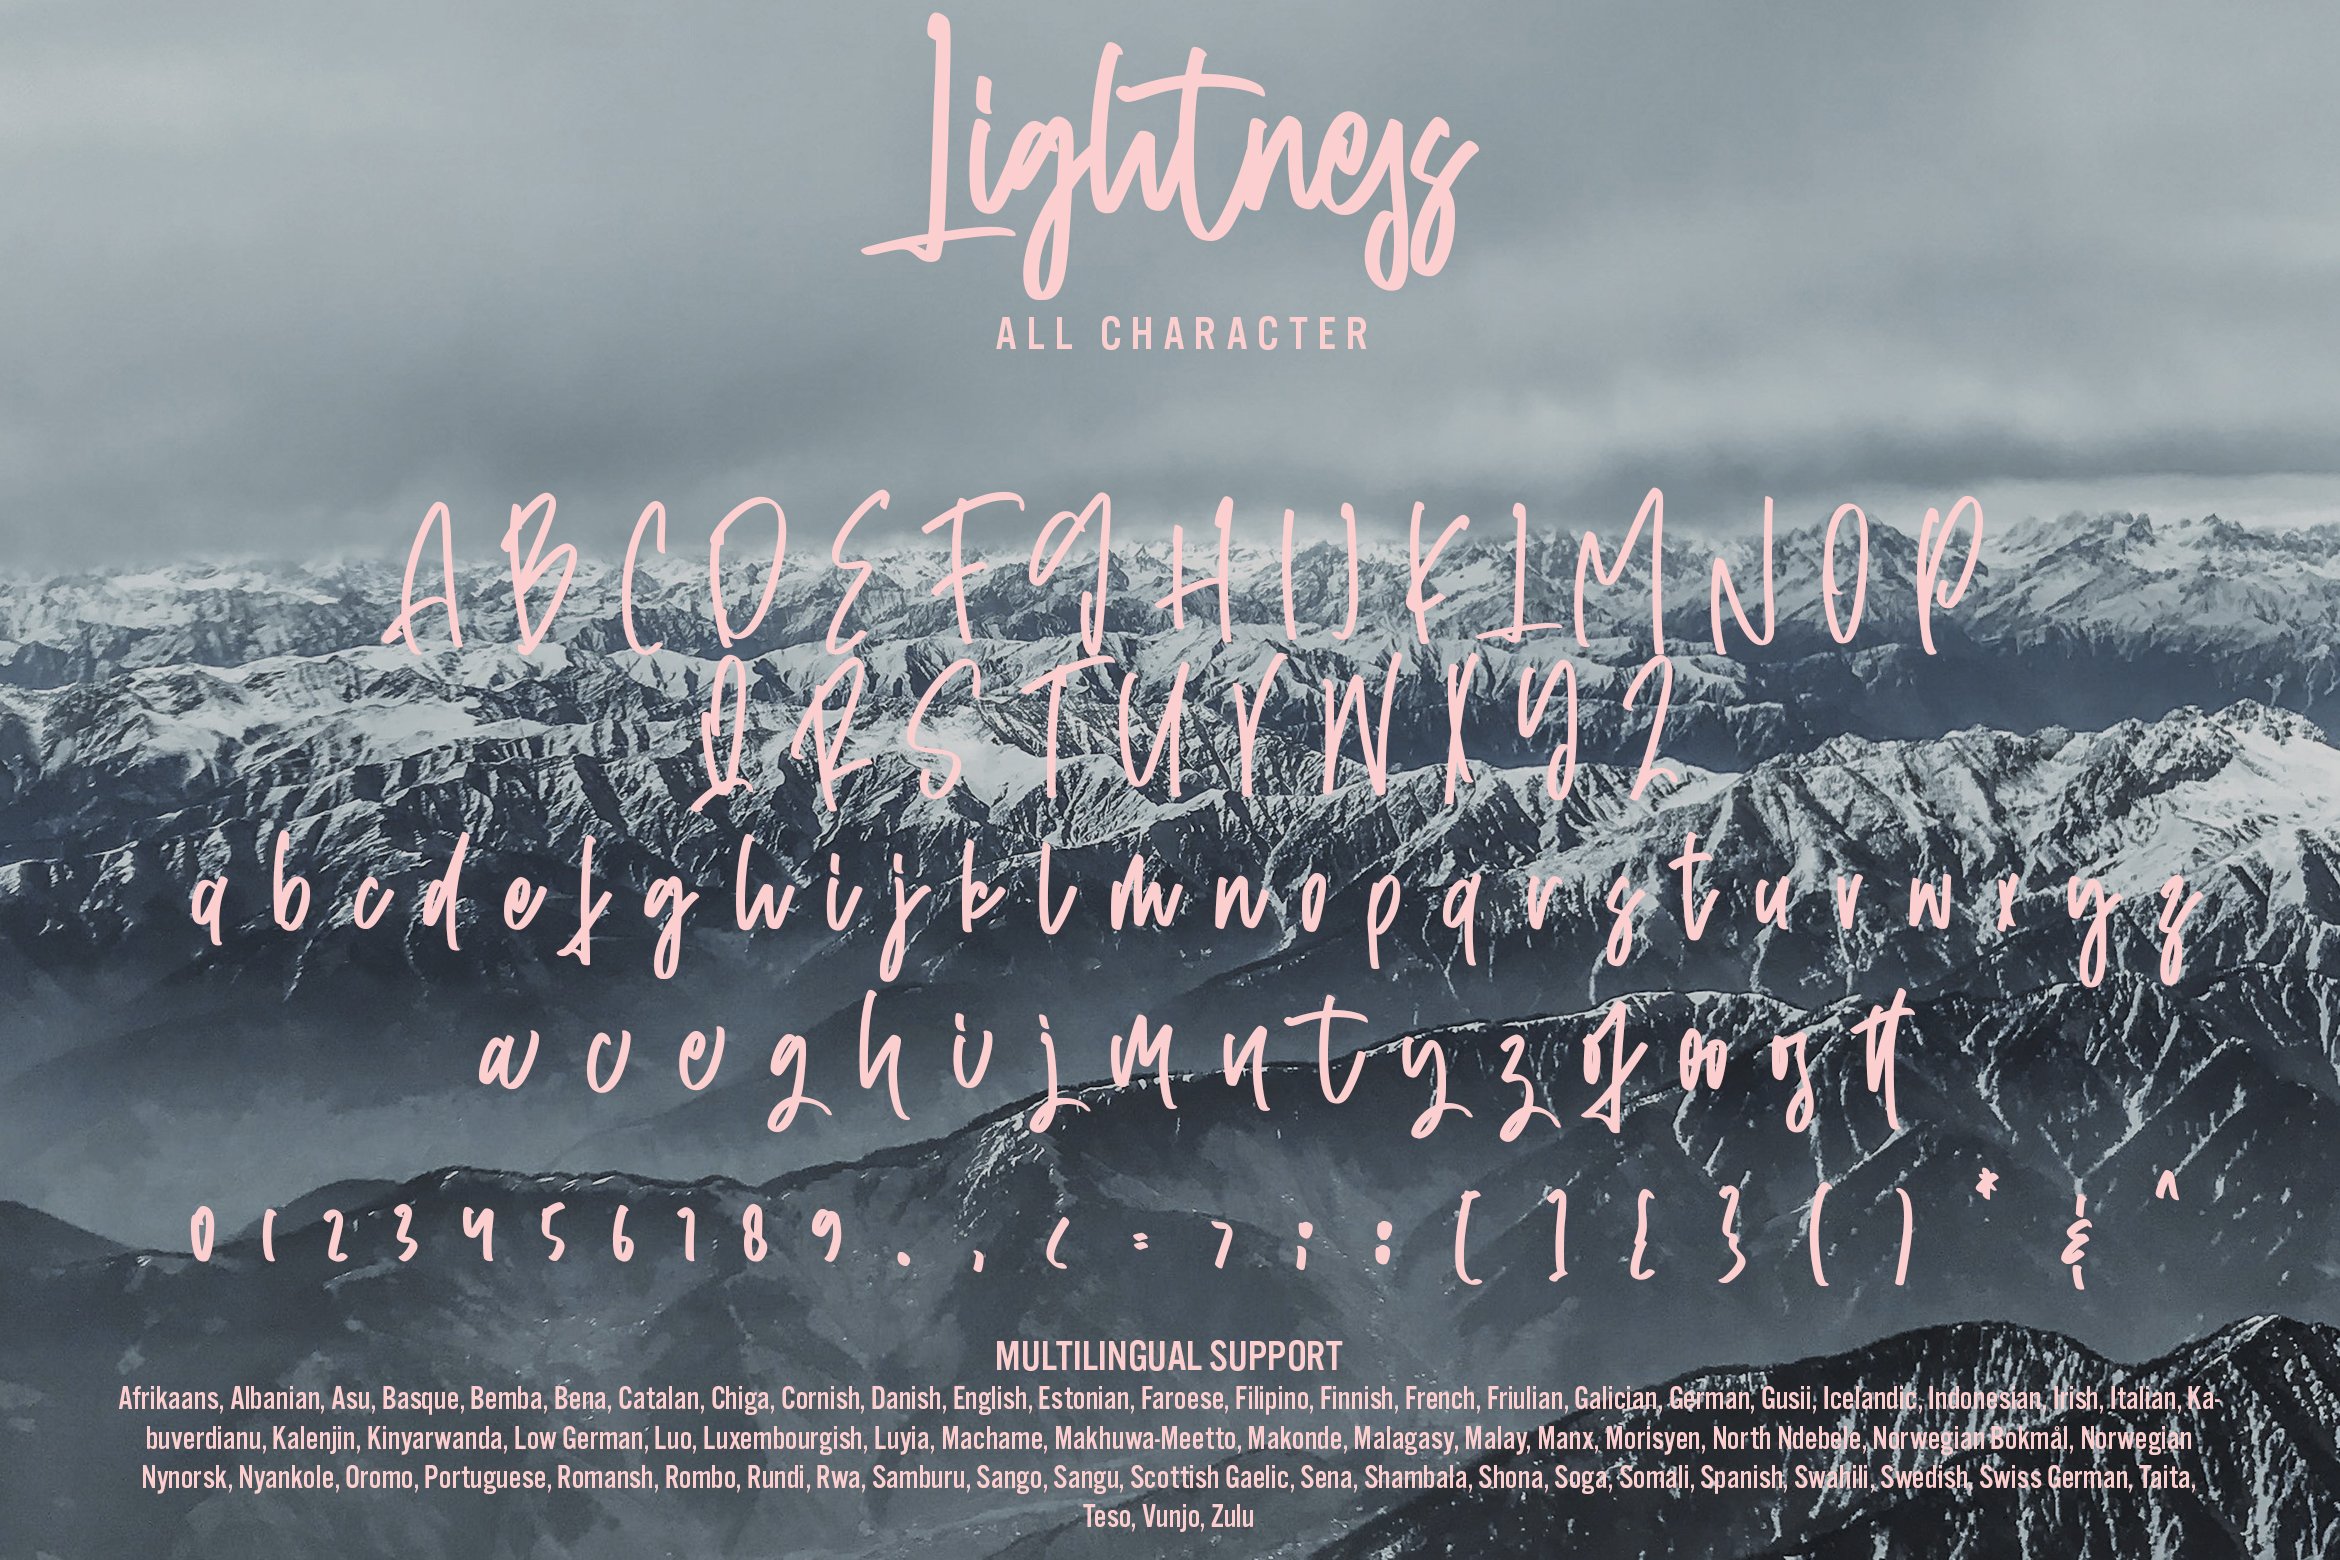 lightness 06 10